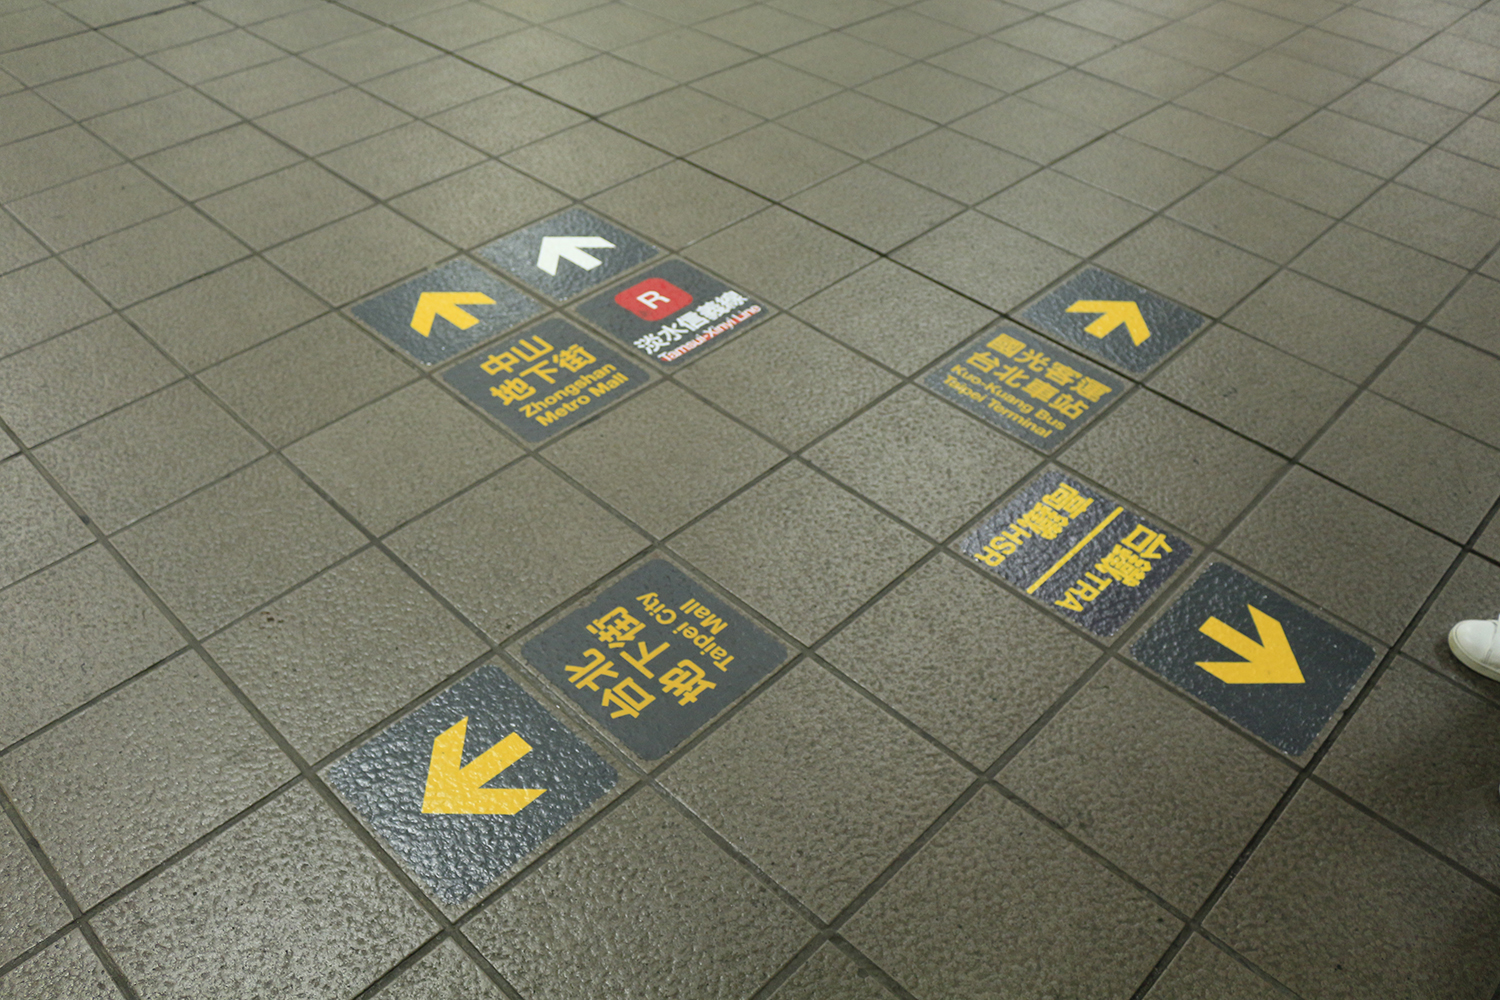 水越設計, 都市酵母, 台北車站, 指標, signage, AGUA Design, City Yeast, 台北市觀光傳播局, 方向